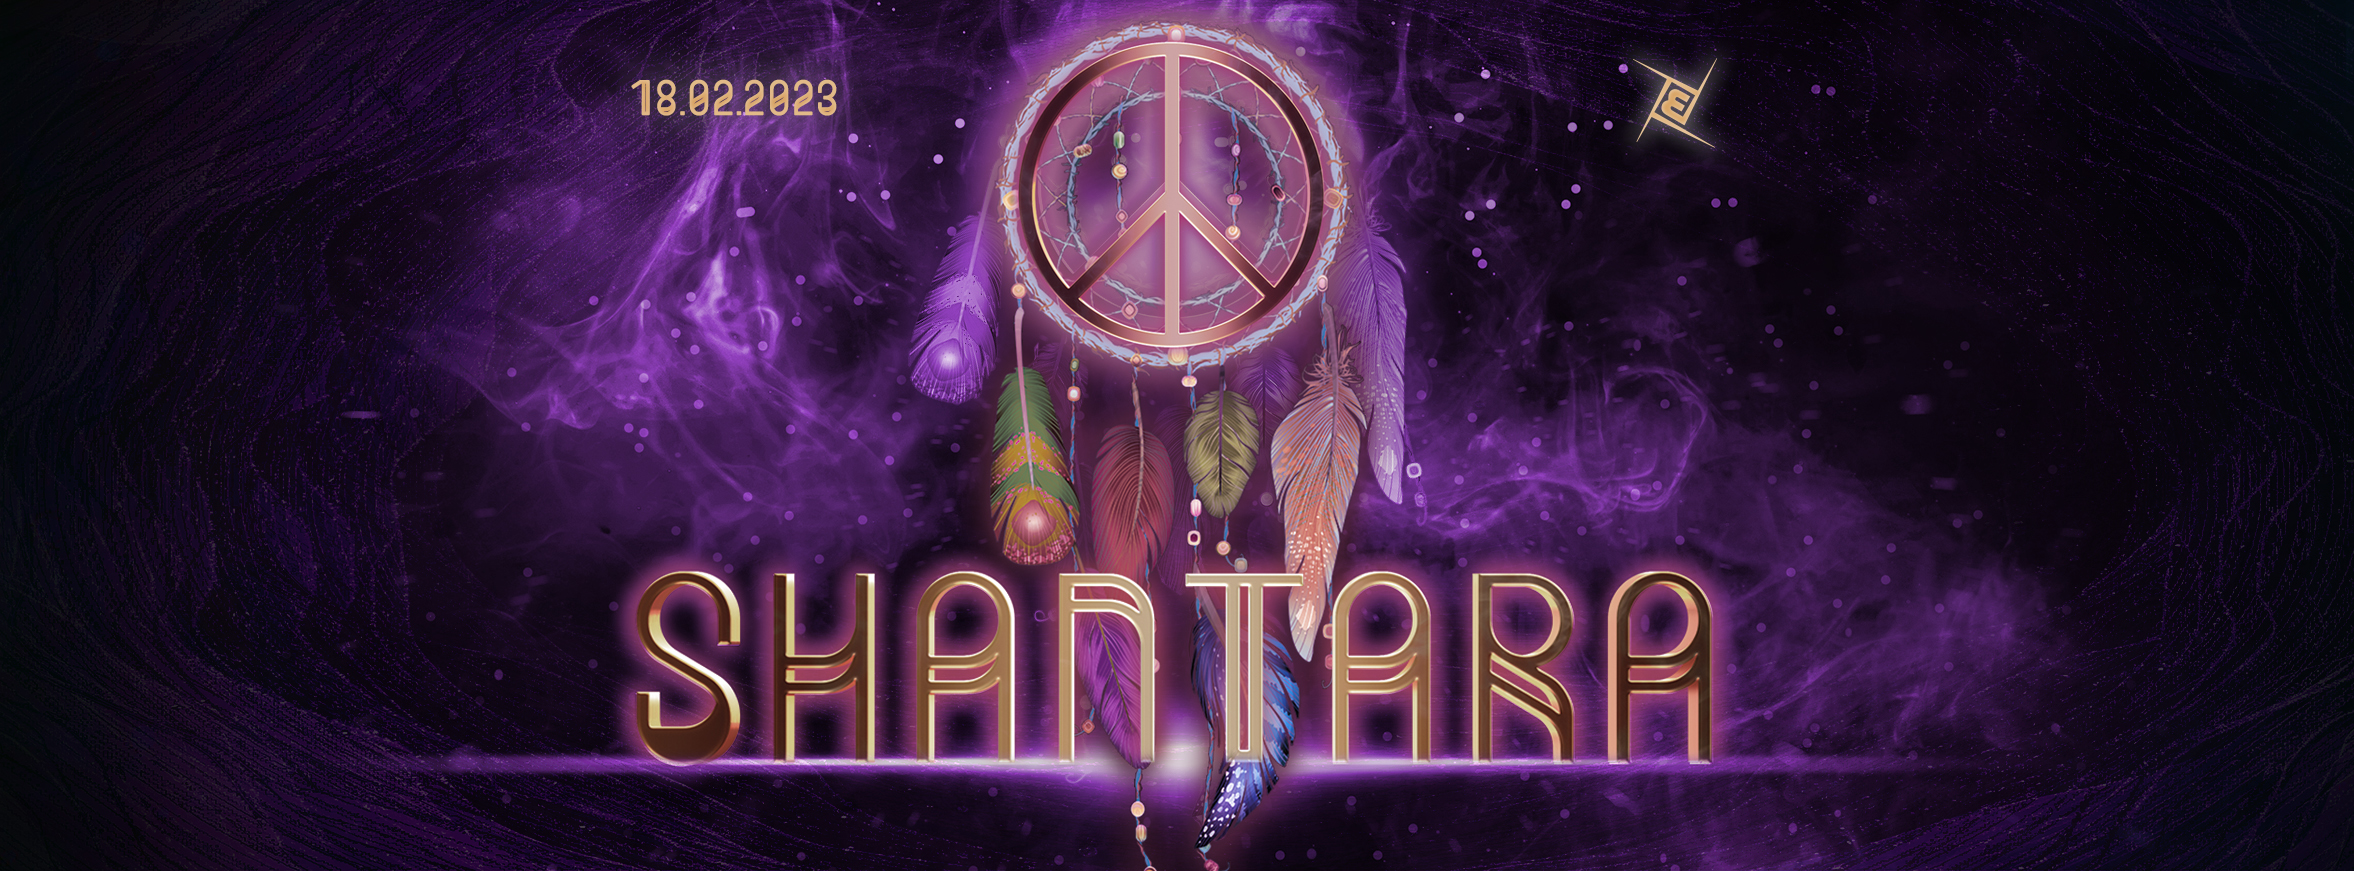 Shantara 18.02.2023